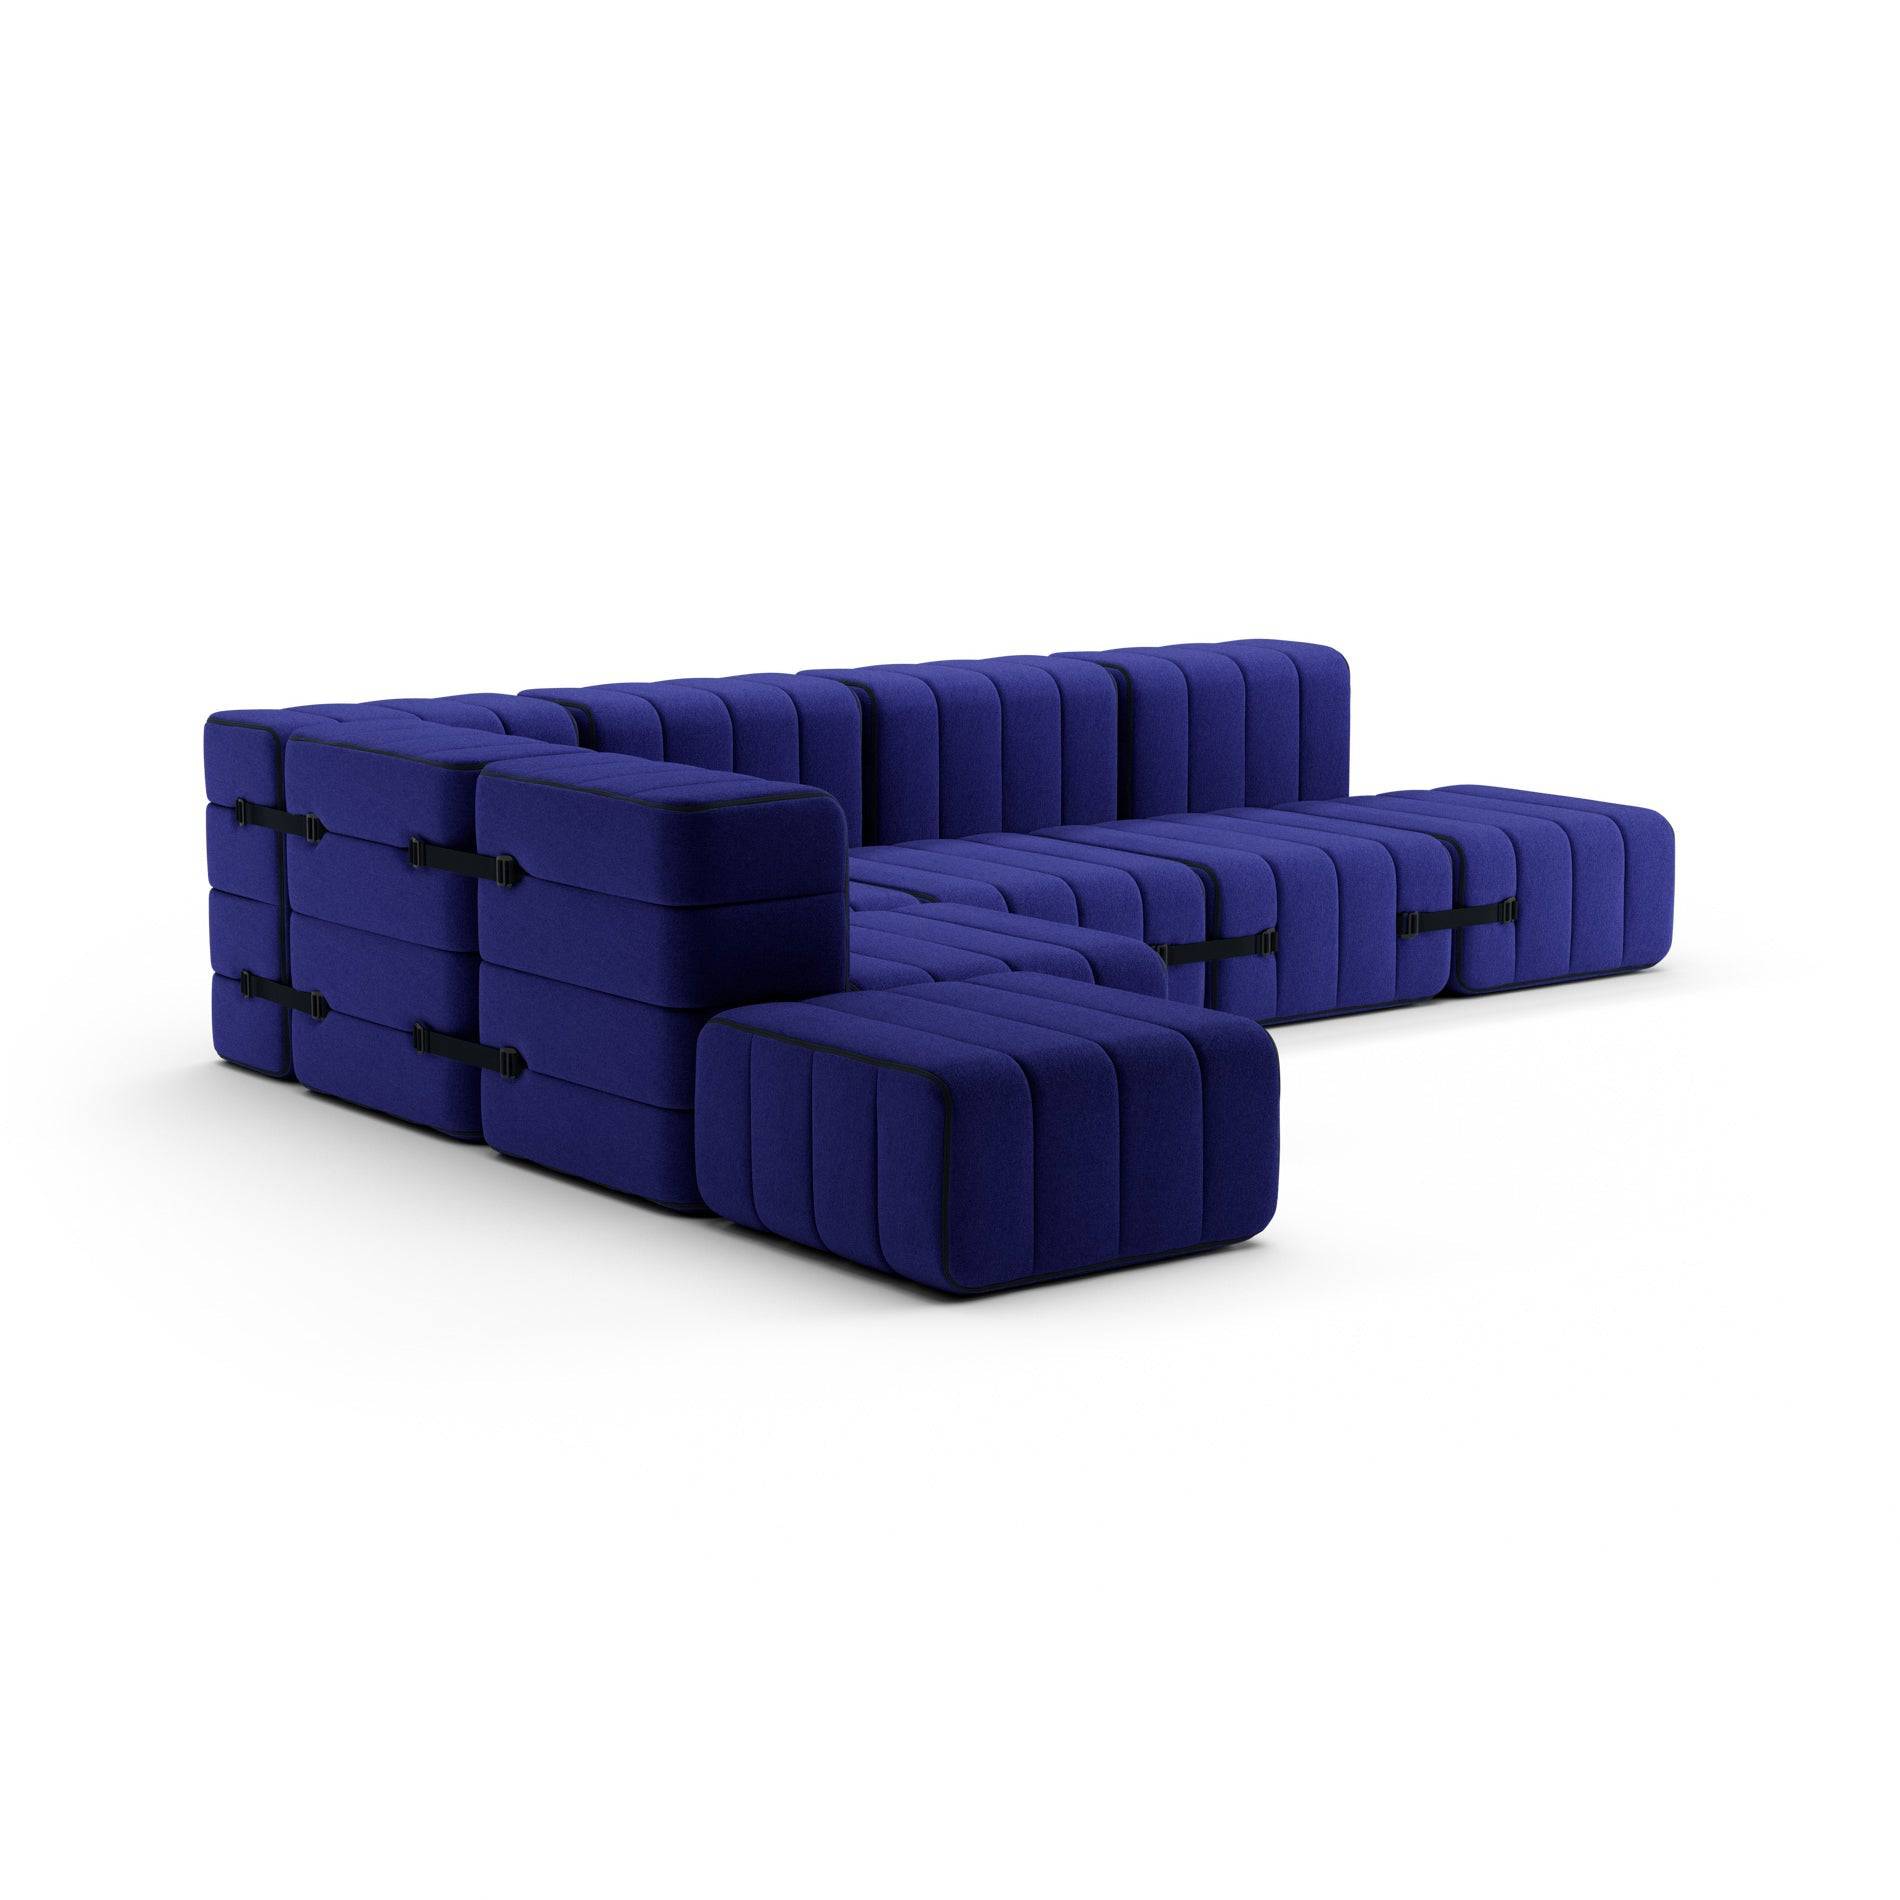 Curt Sofa System - Jet Blue Violett